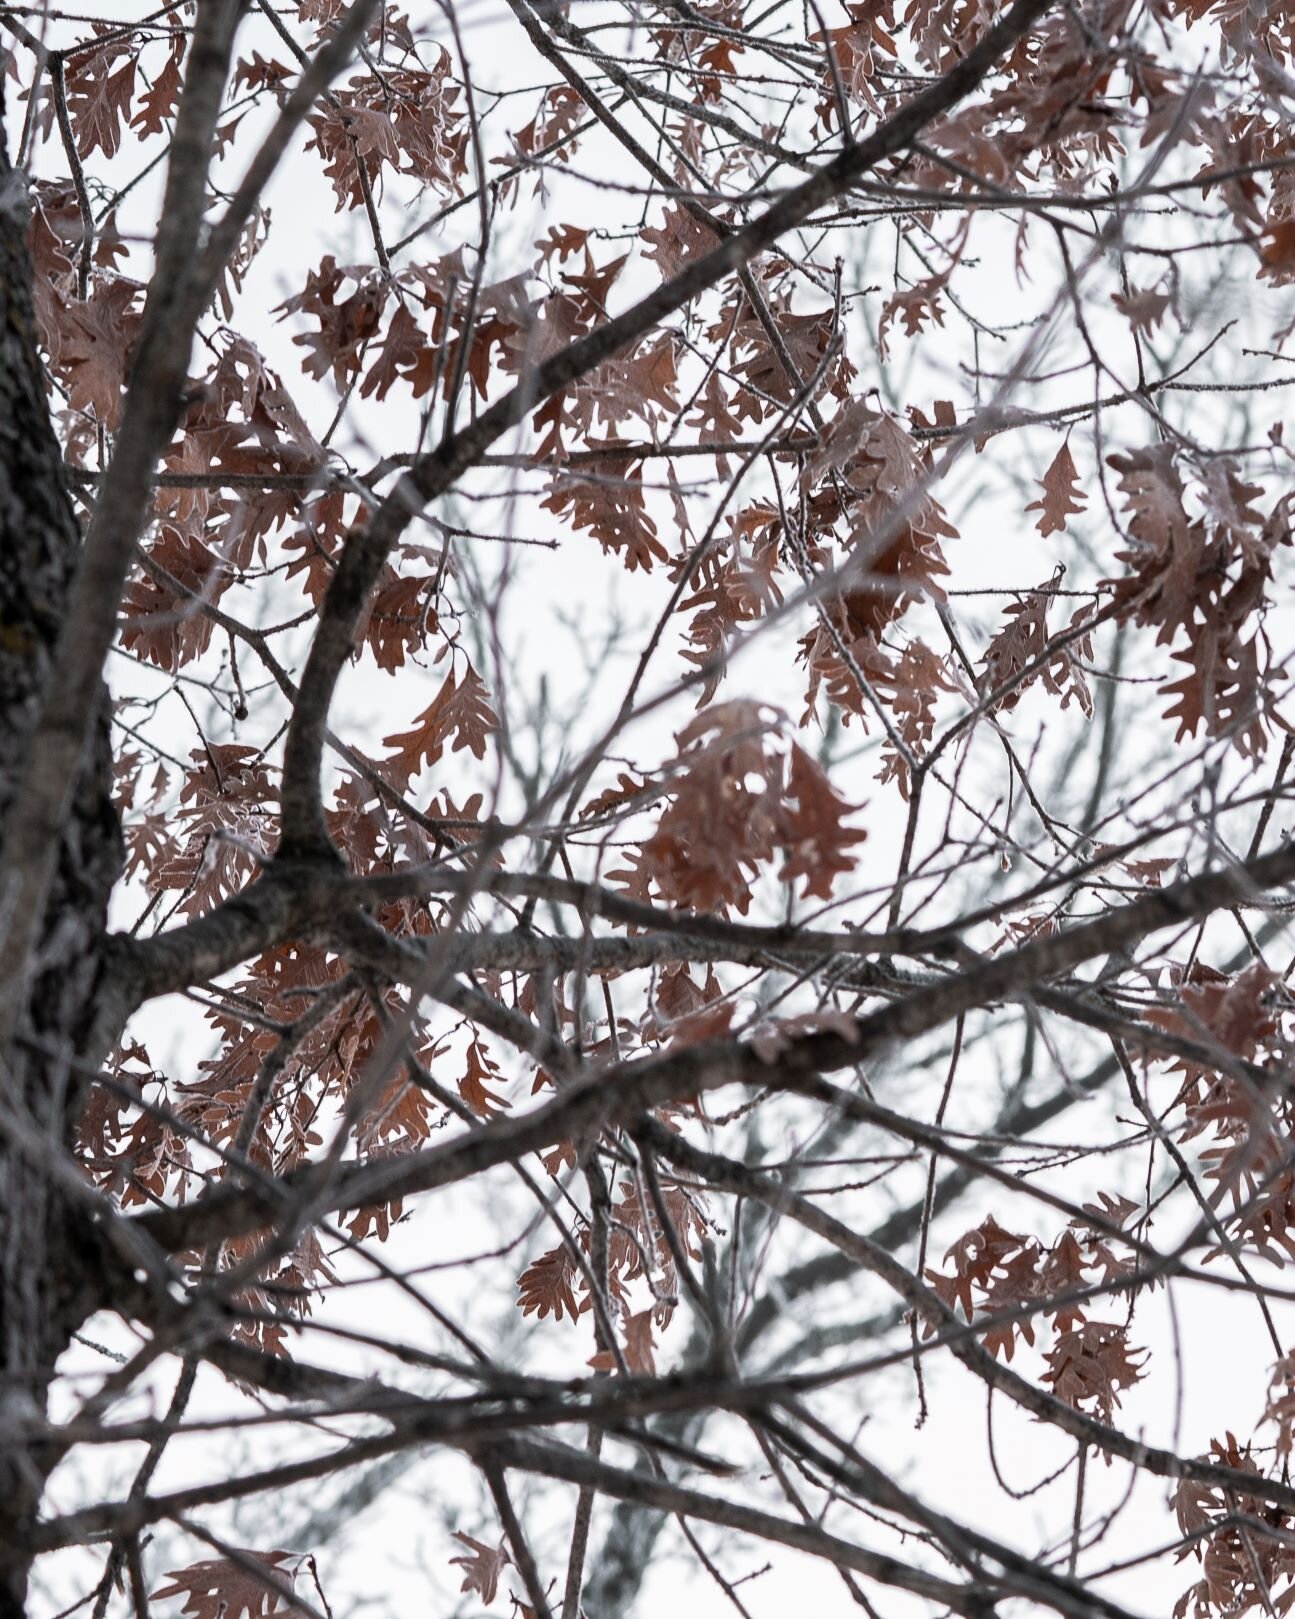 oak leaves in the winter